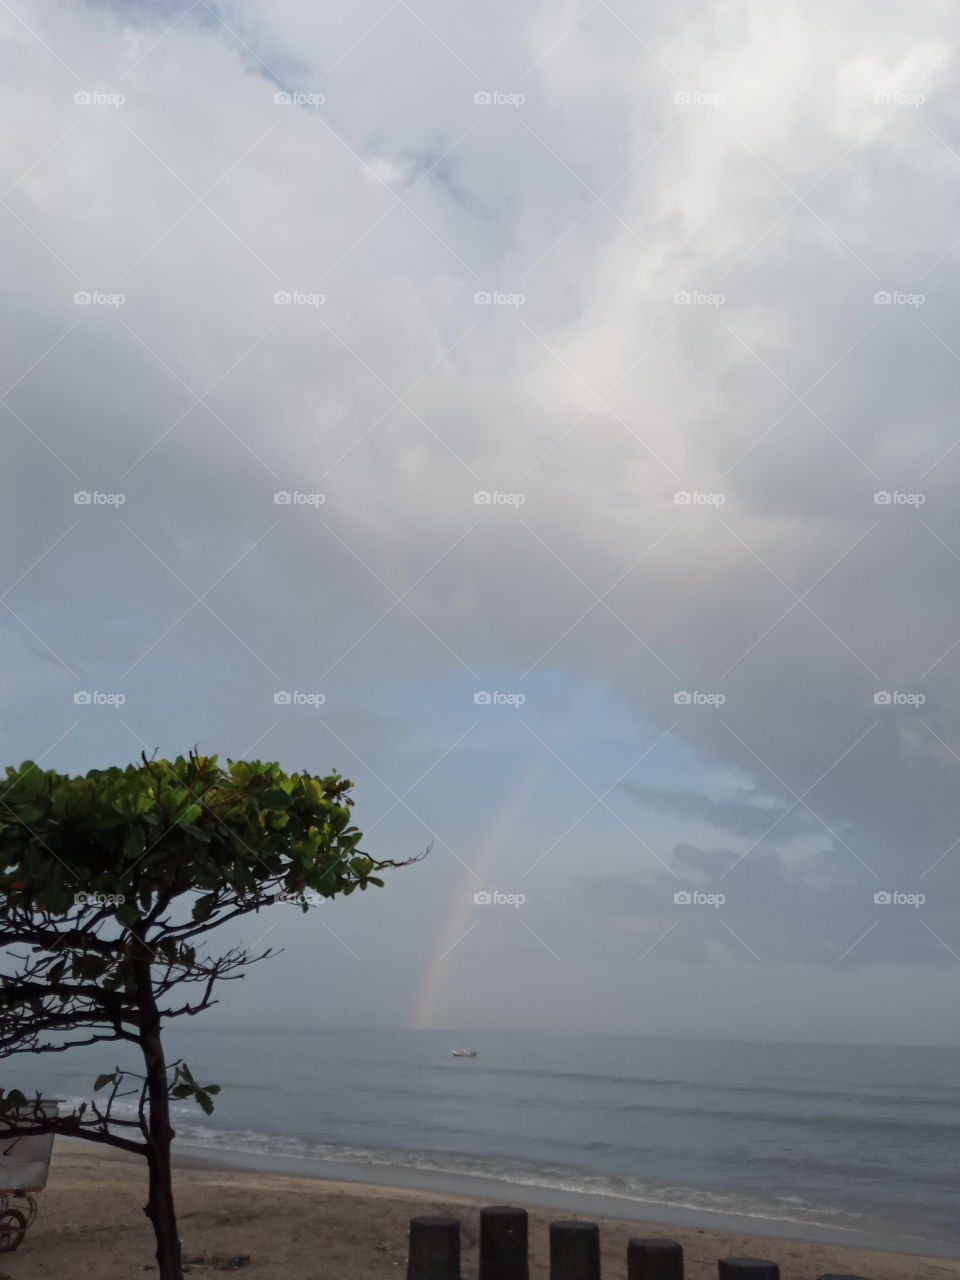 sea side rainbow view